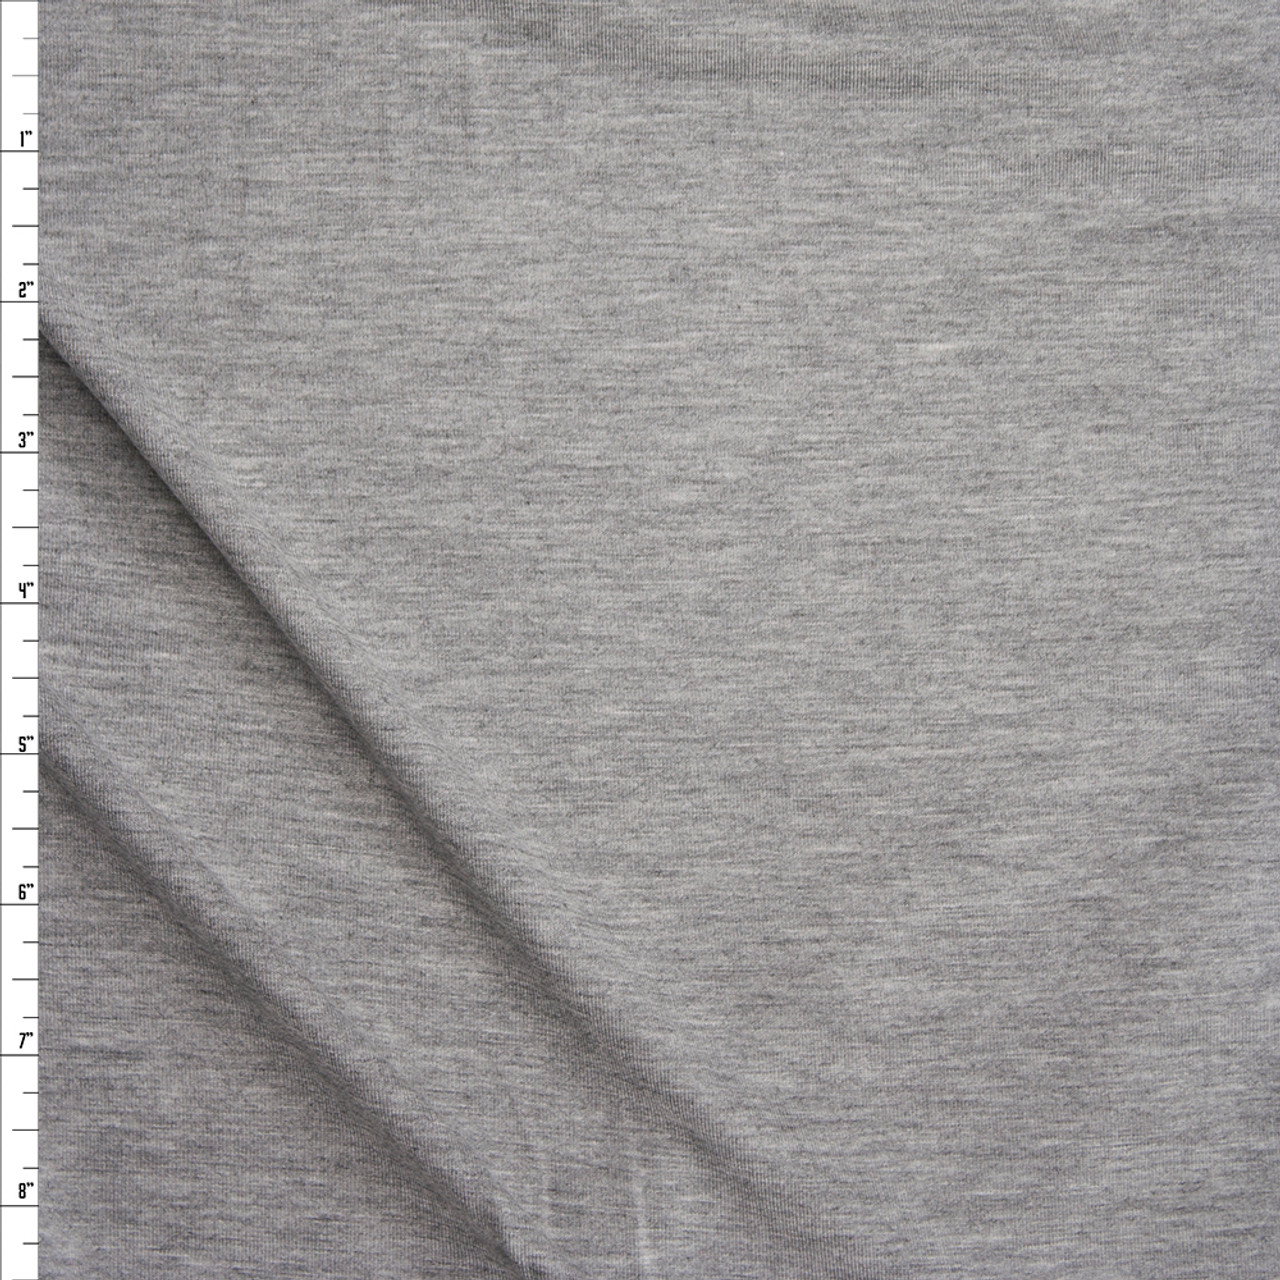 Viscose Jersey Fabric 4 Way Stretch Rayon Lycra Dressmaking